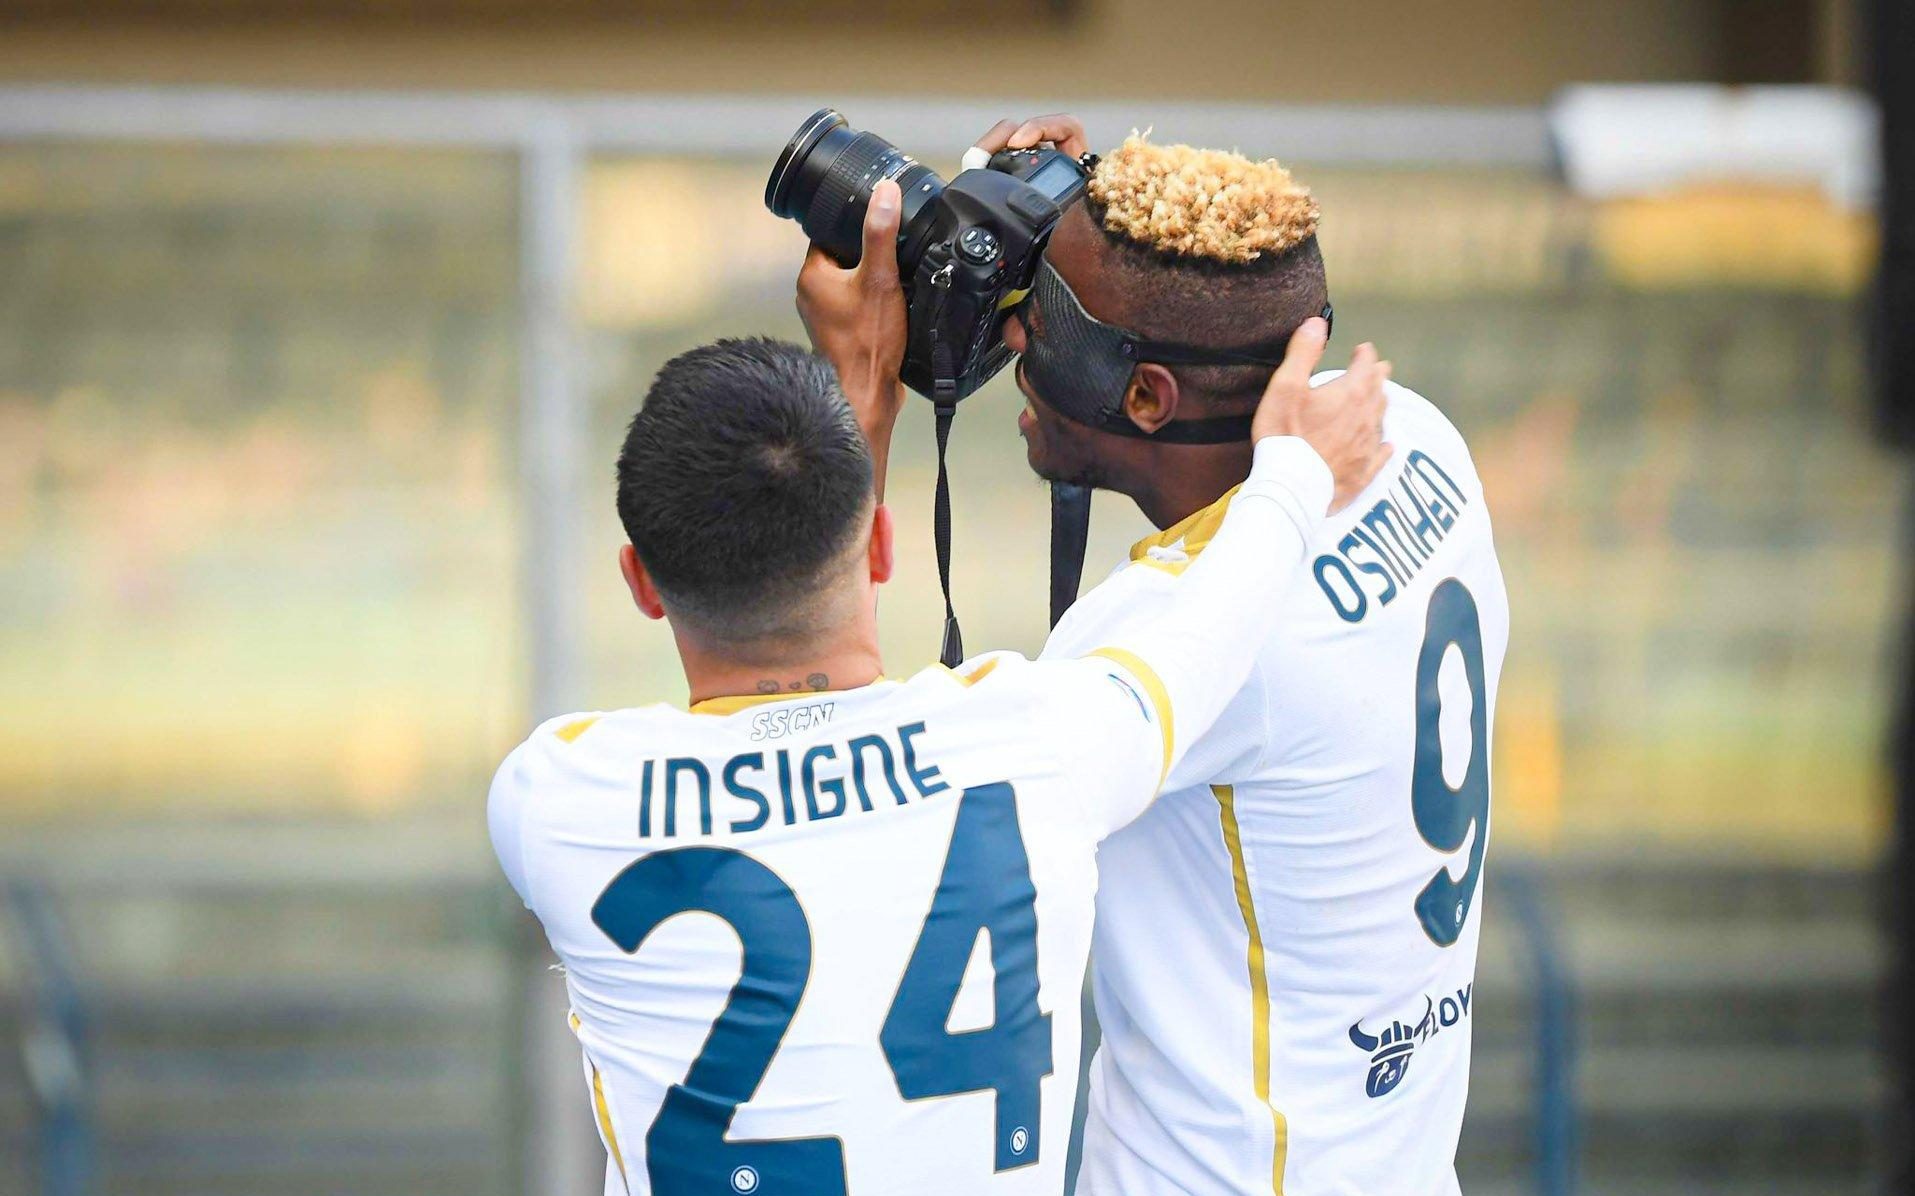 Osimhen Inisgne Serie A round 29 Napoli